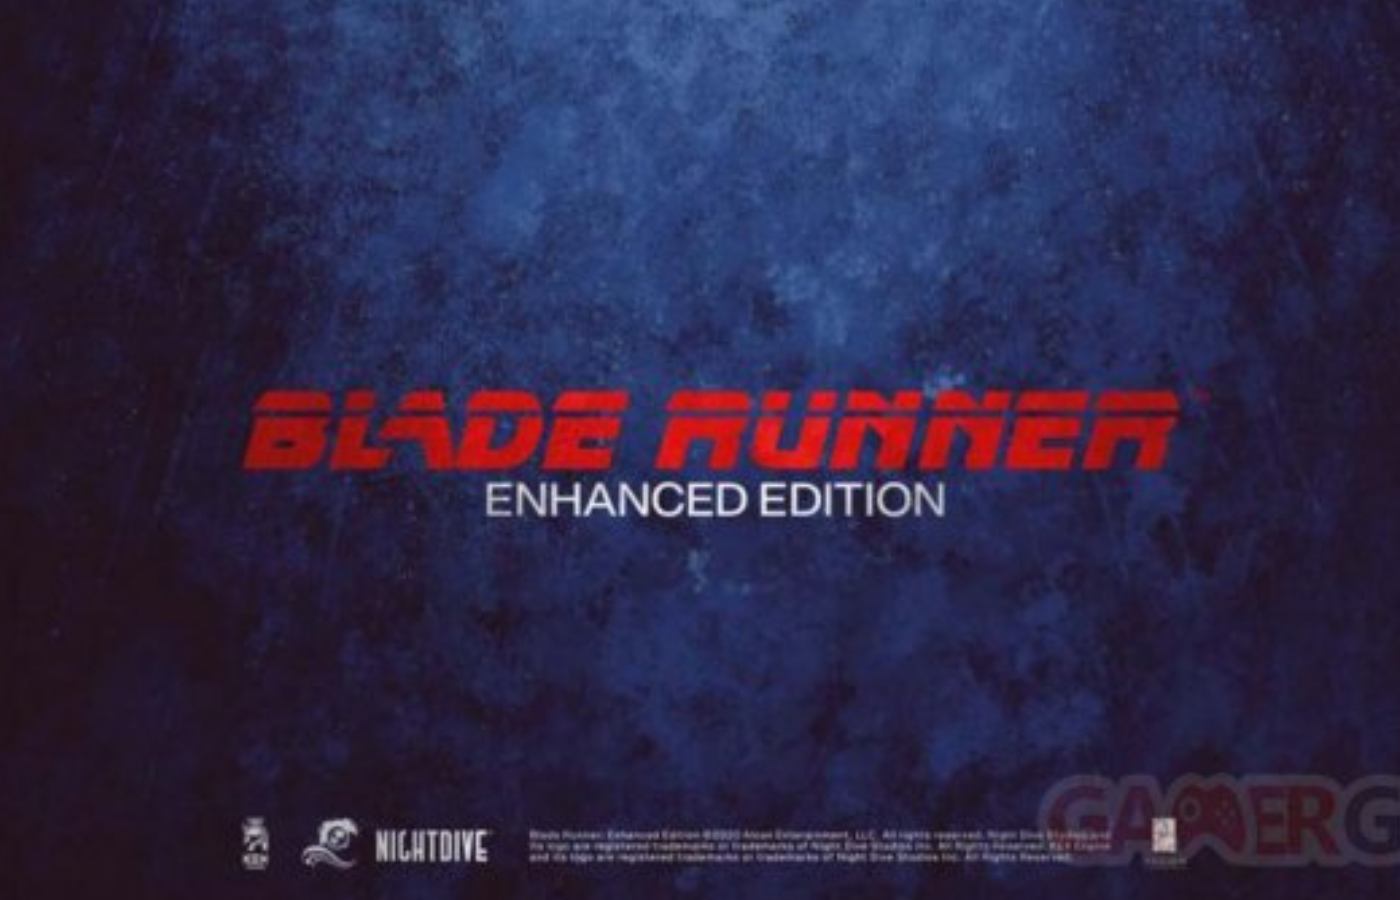 Le jeu vidéo Blade Runner va revenir sur PC et consoles en version restaurée